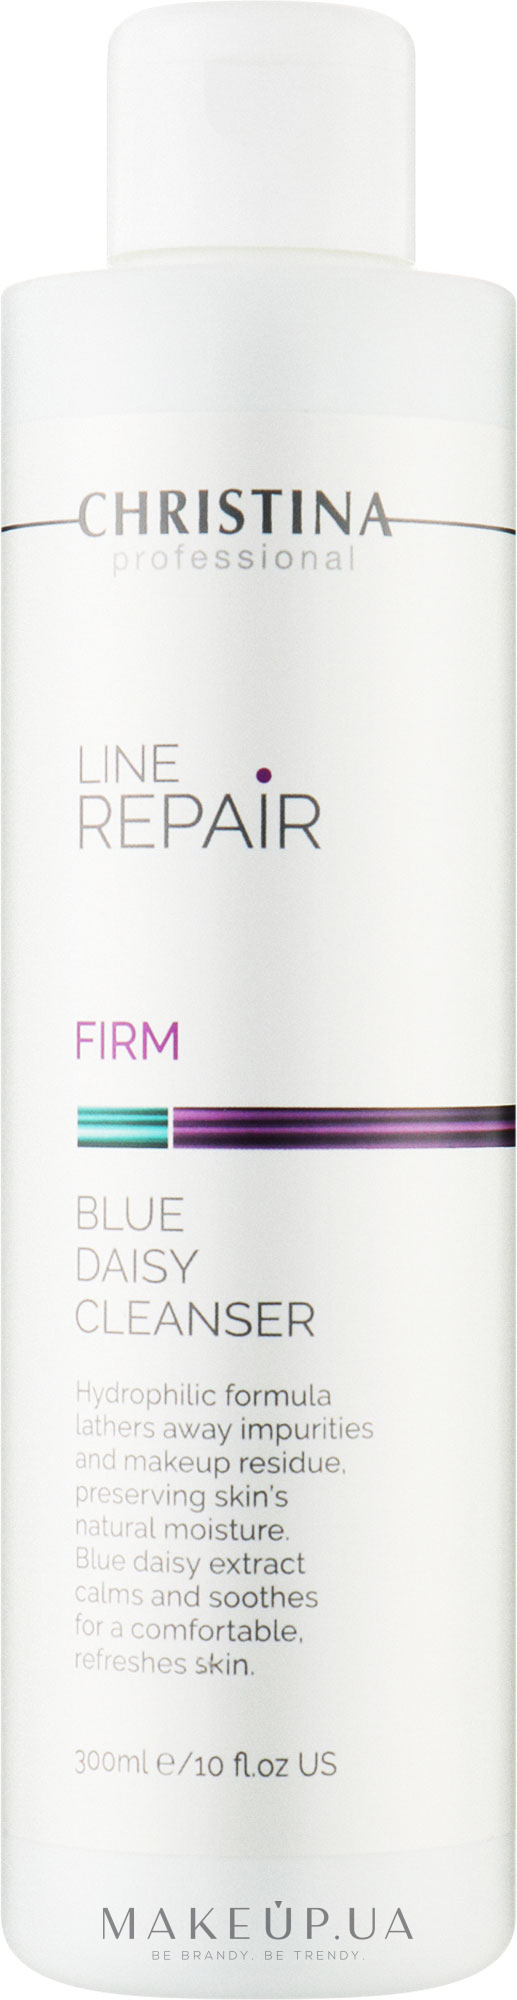 Очищающий раствор с экстрактом голубой маргаритки - Christina Line Repair Firm Blue Daisy Cleanser — фото 300ml